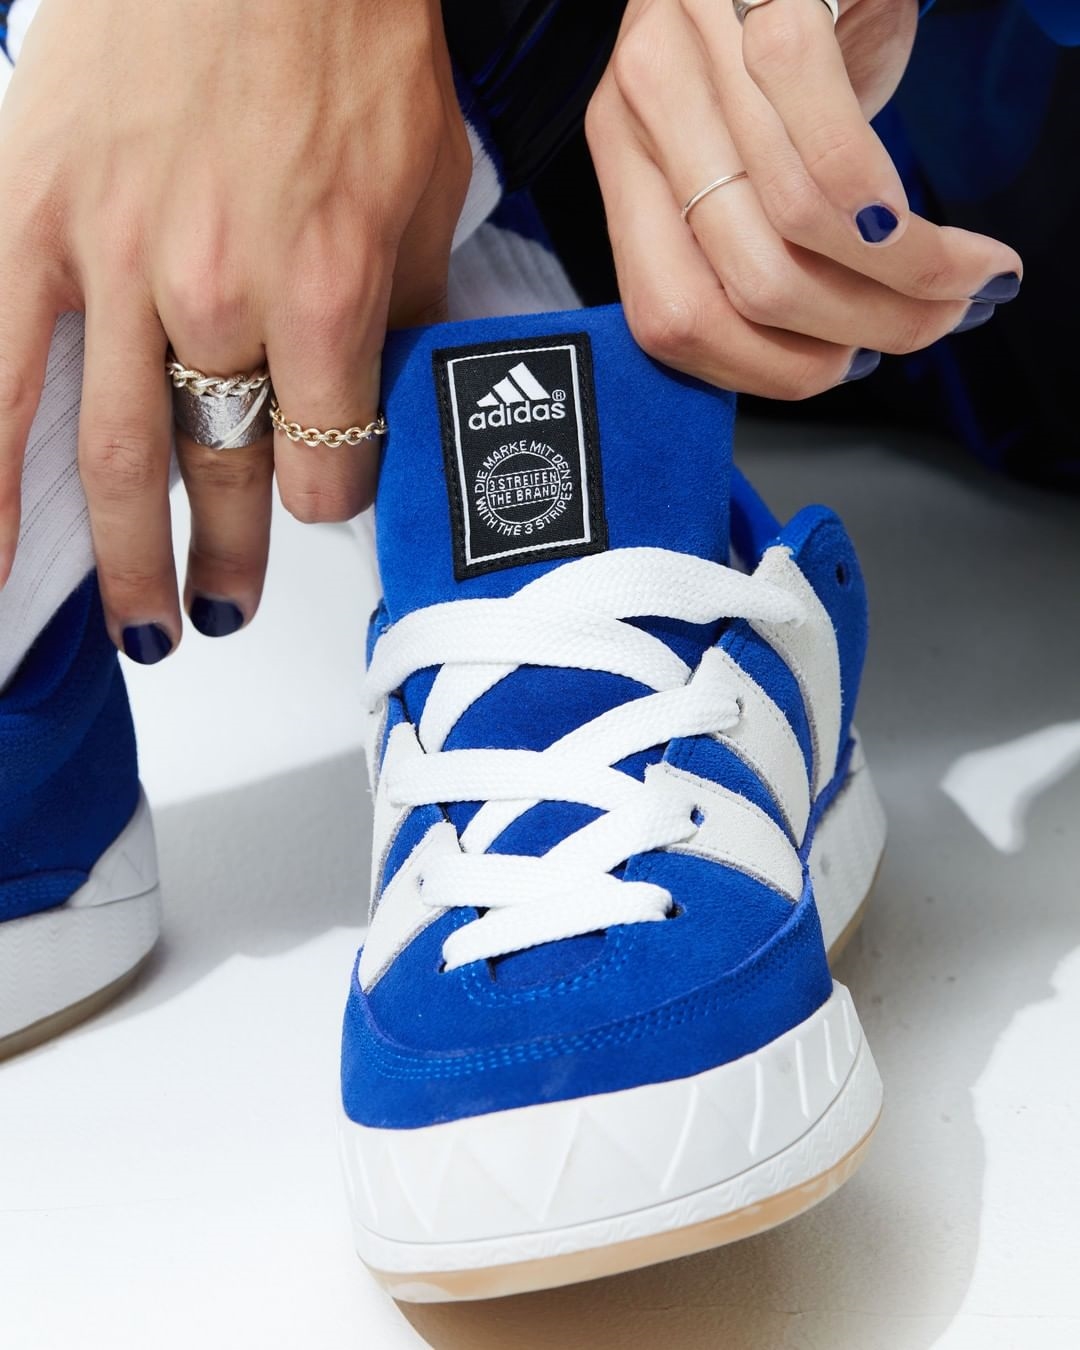 【国内 6/11、6/14 発売】atmos × adidas ADIMATIC “Blue” (アトモス アディダス アディマティック “ブルー”) [GX1828]